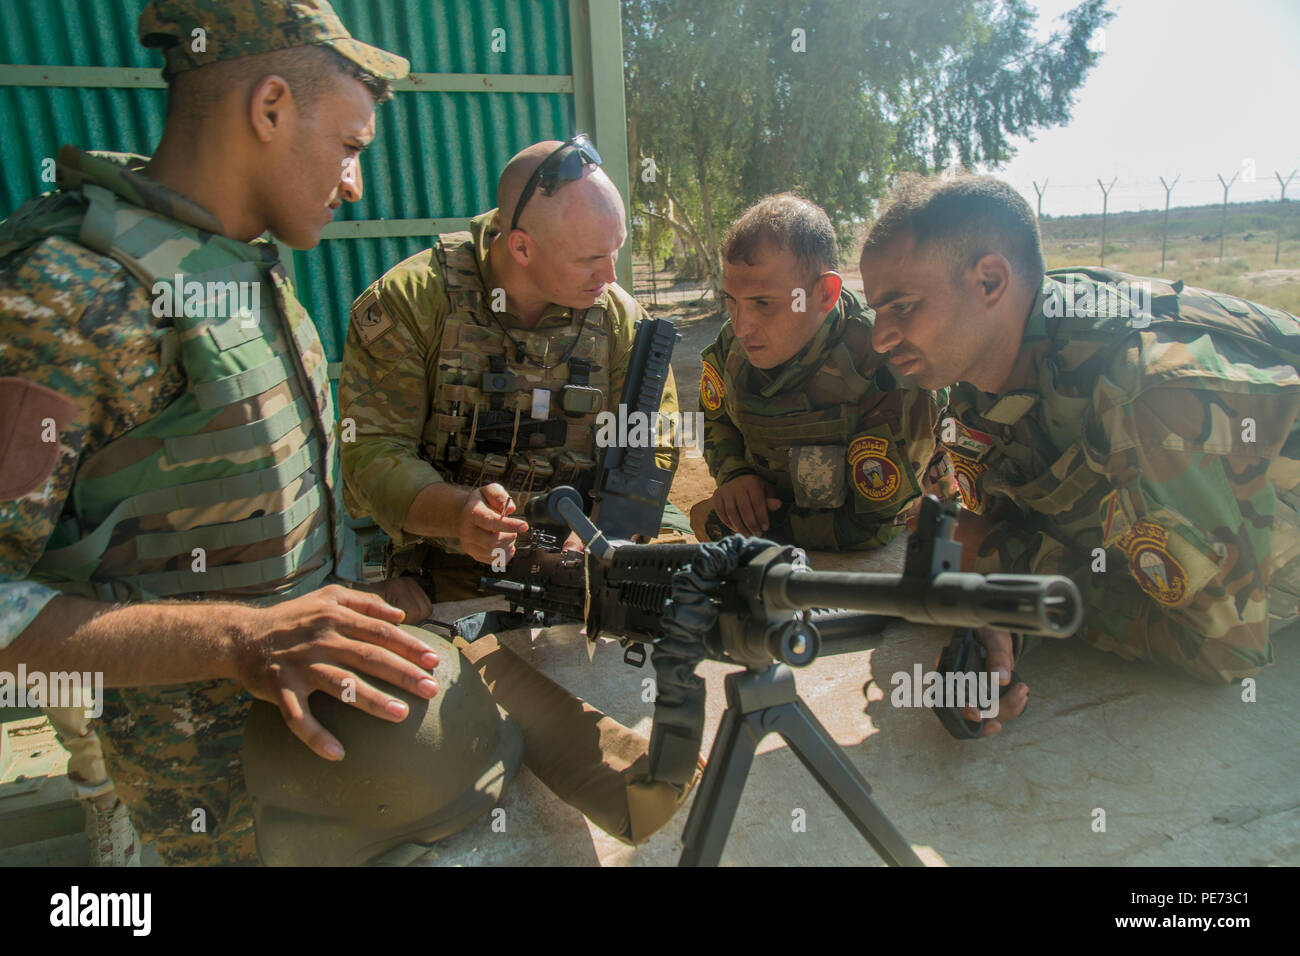 Eine australische Soldaten zugeordnet zu Aufgabengruppe Taji zeigt irakische Soldaten der 71 irakischen Armee Feuerwehr zugewiesen, wie ein Funktionen prüfen auf einem M249 Light Machine Gun während der Schlacht zu führen - die Aufgabe Ausbildung im Camp Taji, Irak, Okt. 10, 2015. Die australische Soldaten war, die einen fortgeschrittenen Kurs, wie die Waffe funktioniert. Dieses Wissen wird irakische Soldaten helfen, mit besseren Treffsicherheit im Kampf gegen die Islamischen Staat im Irak und der Levante. (U.S. Armee Foto von SPC. William Marlow/Freigegeben) Stockfoto